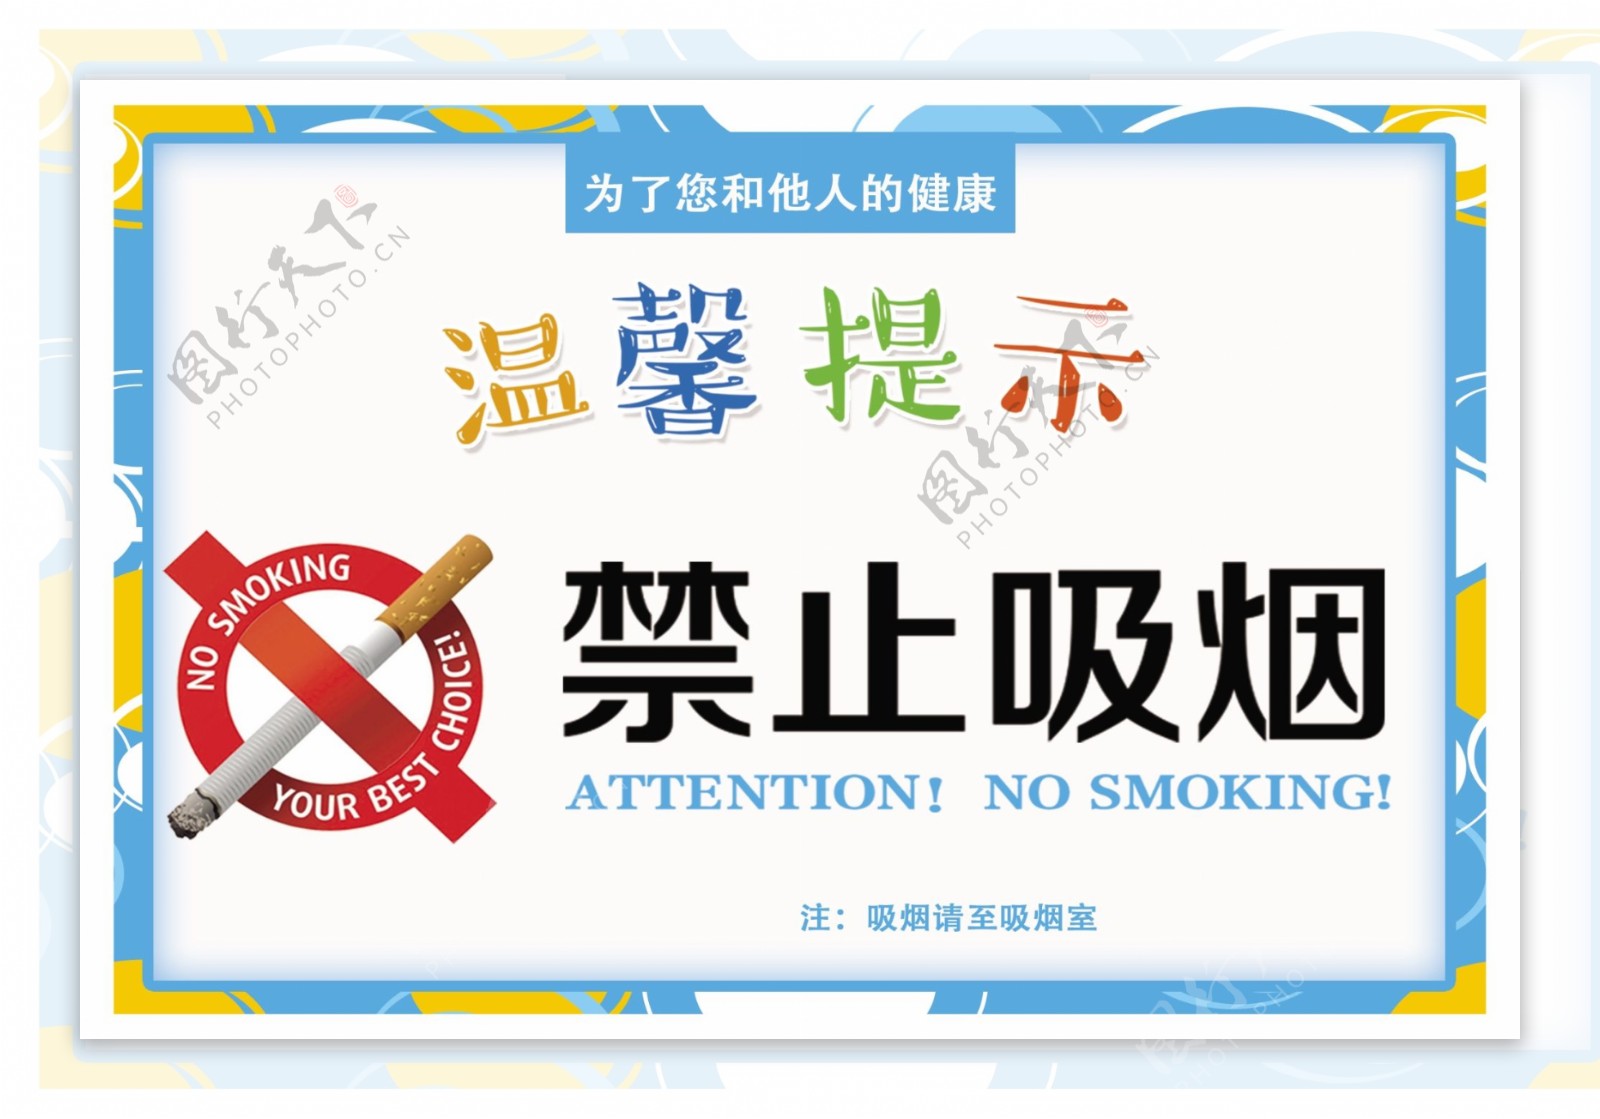 禁止吸烟温馨提示